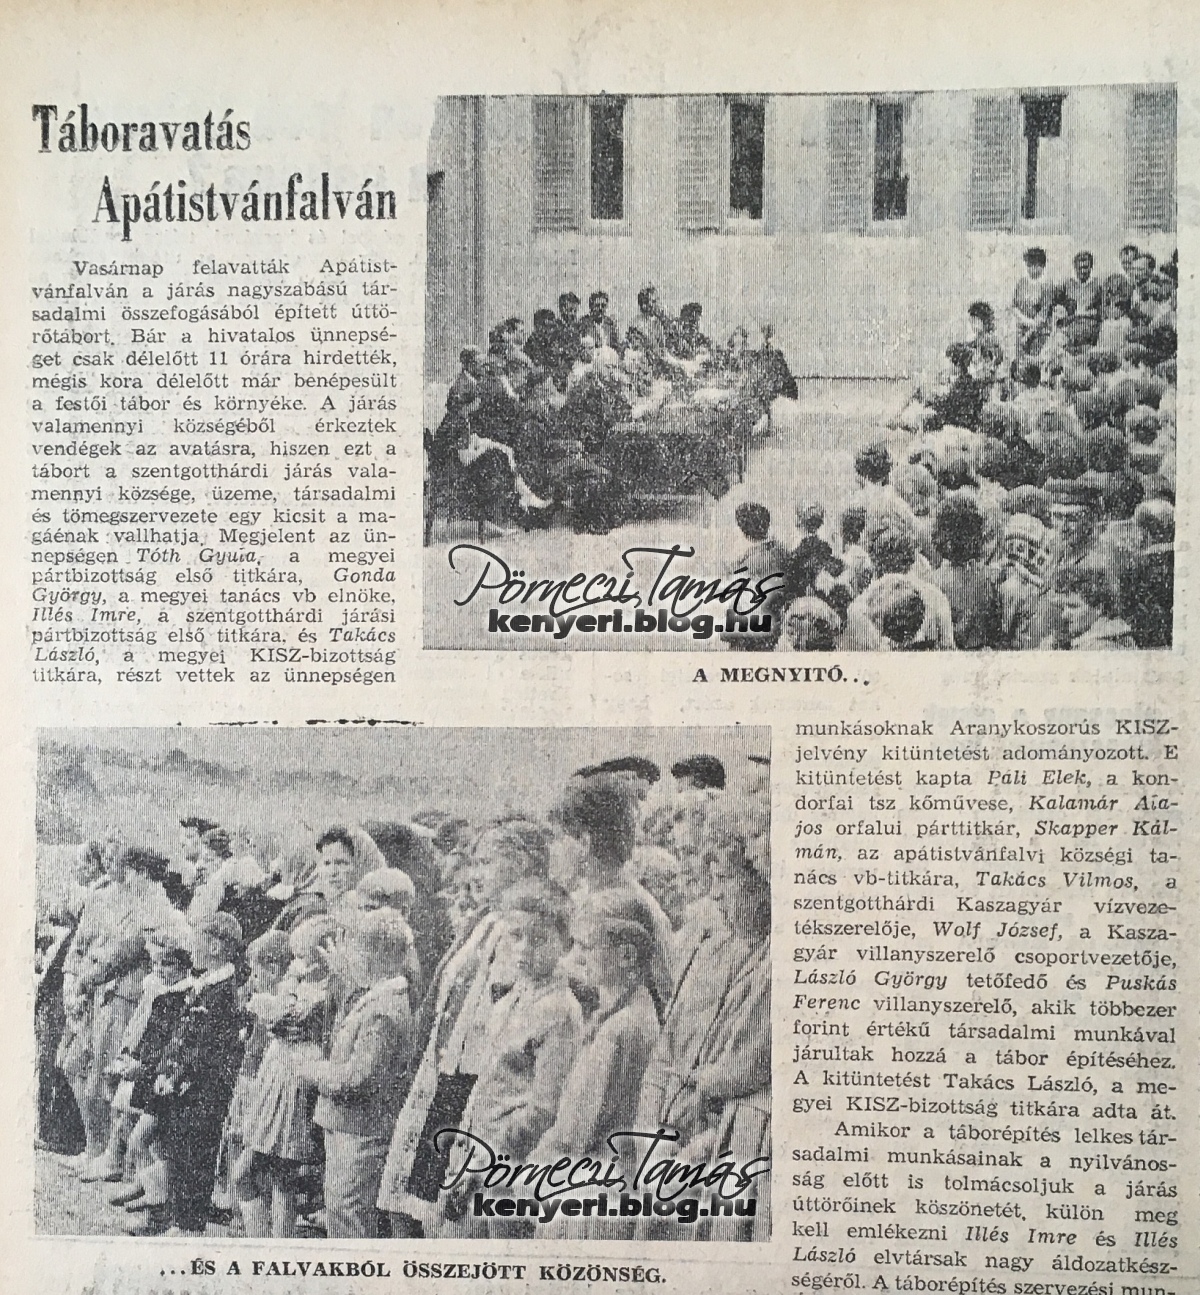 Cikk részlet a táboravatóról (Vas Népe 1964. július 14)